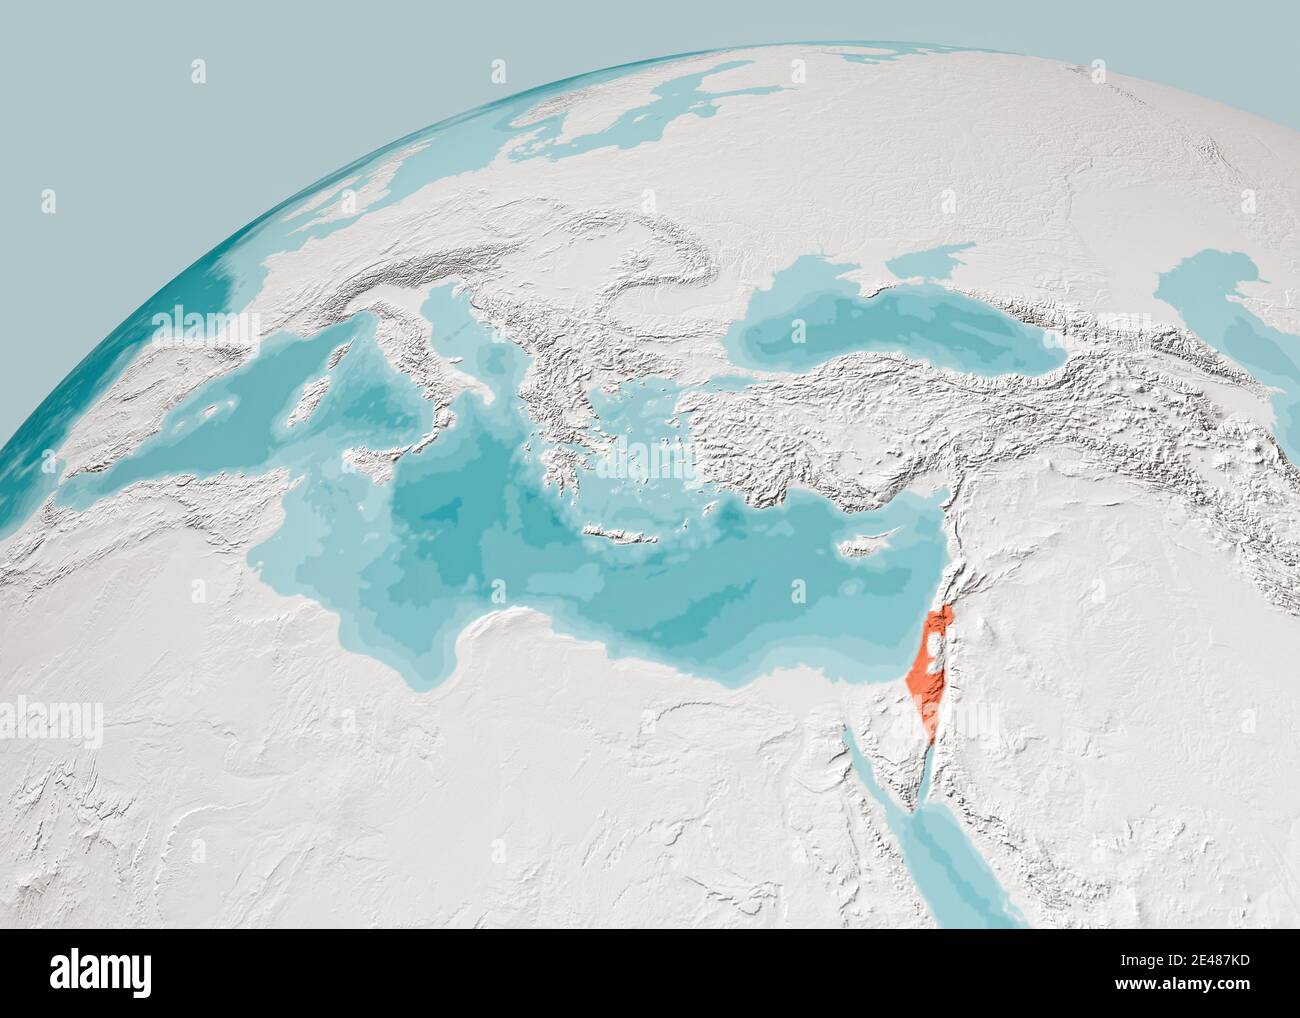 Weltkarte des Mittelmeers und Israels, Europas Afrika und des Nahen Ostens. Kartographie, geographischer Atlas. 3d-Rendering. Bathymetrie, unter Wasser Stockfoto